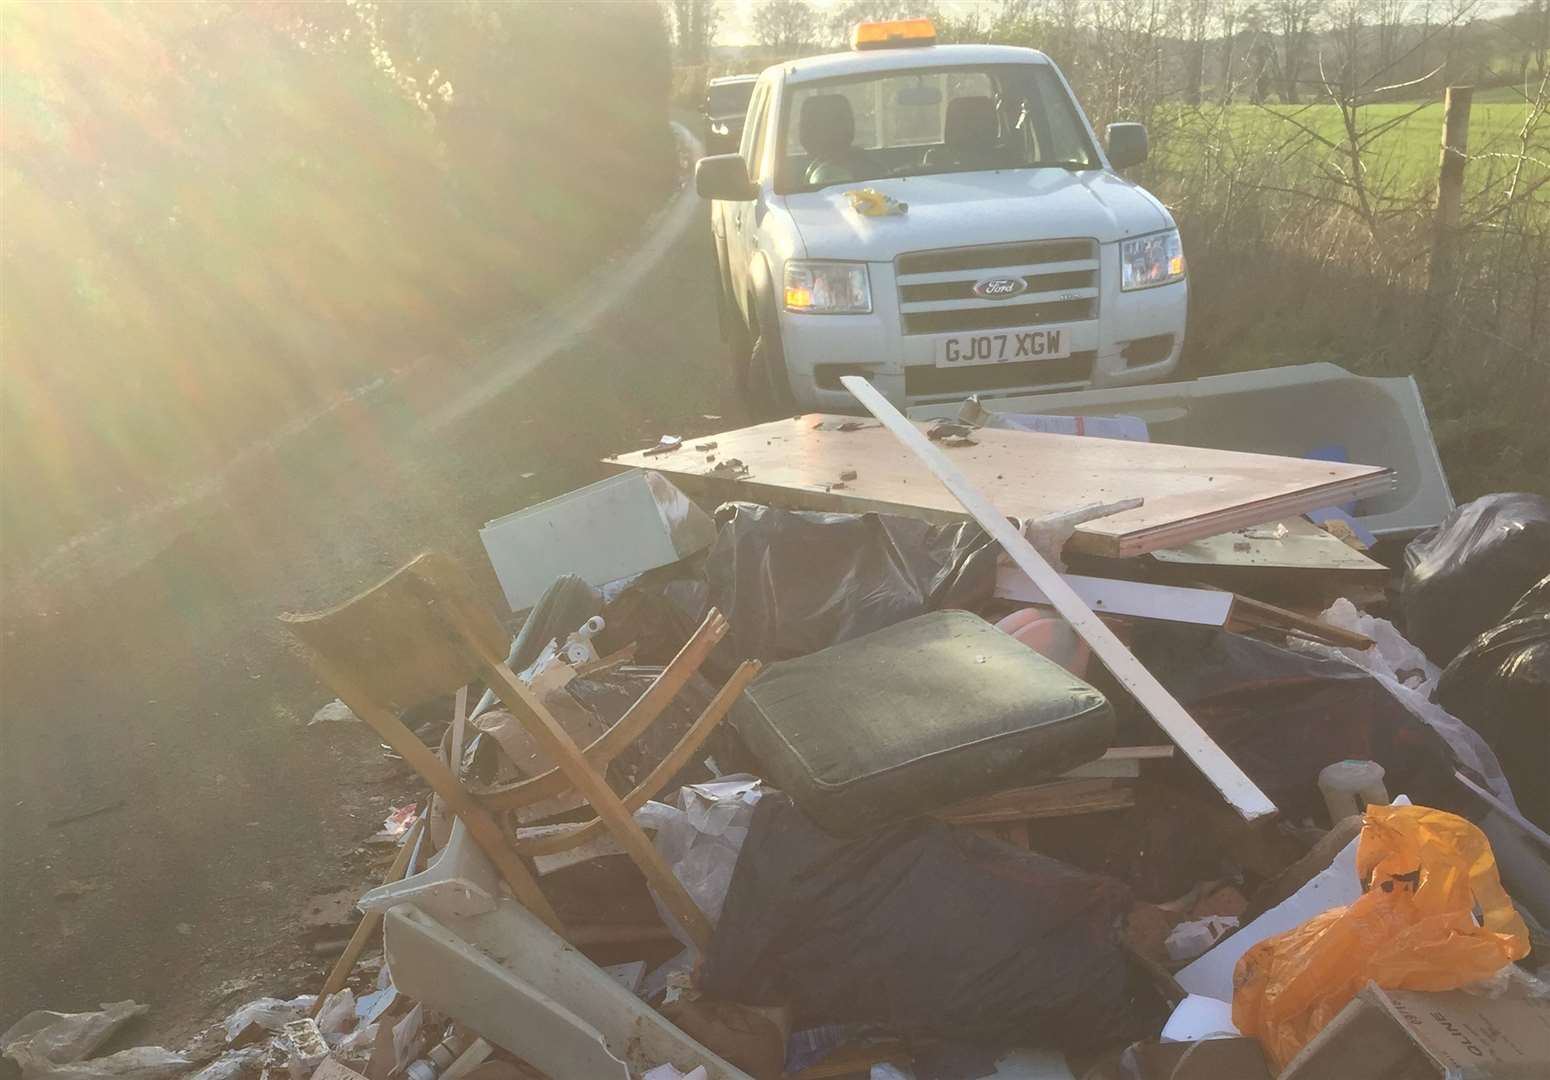 The rubbish found dumped in Castle Farm Road in Shoreham, near Sevenoaks. Picture: Sevenoaks District Council